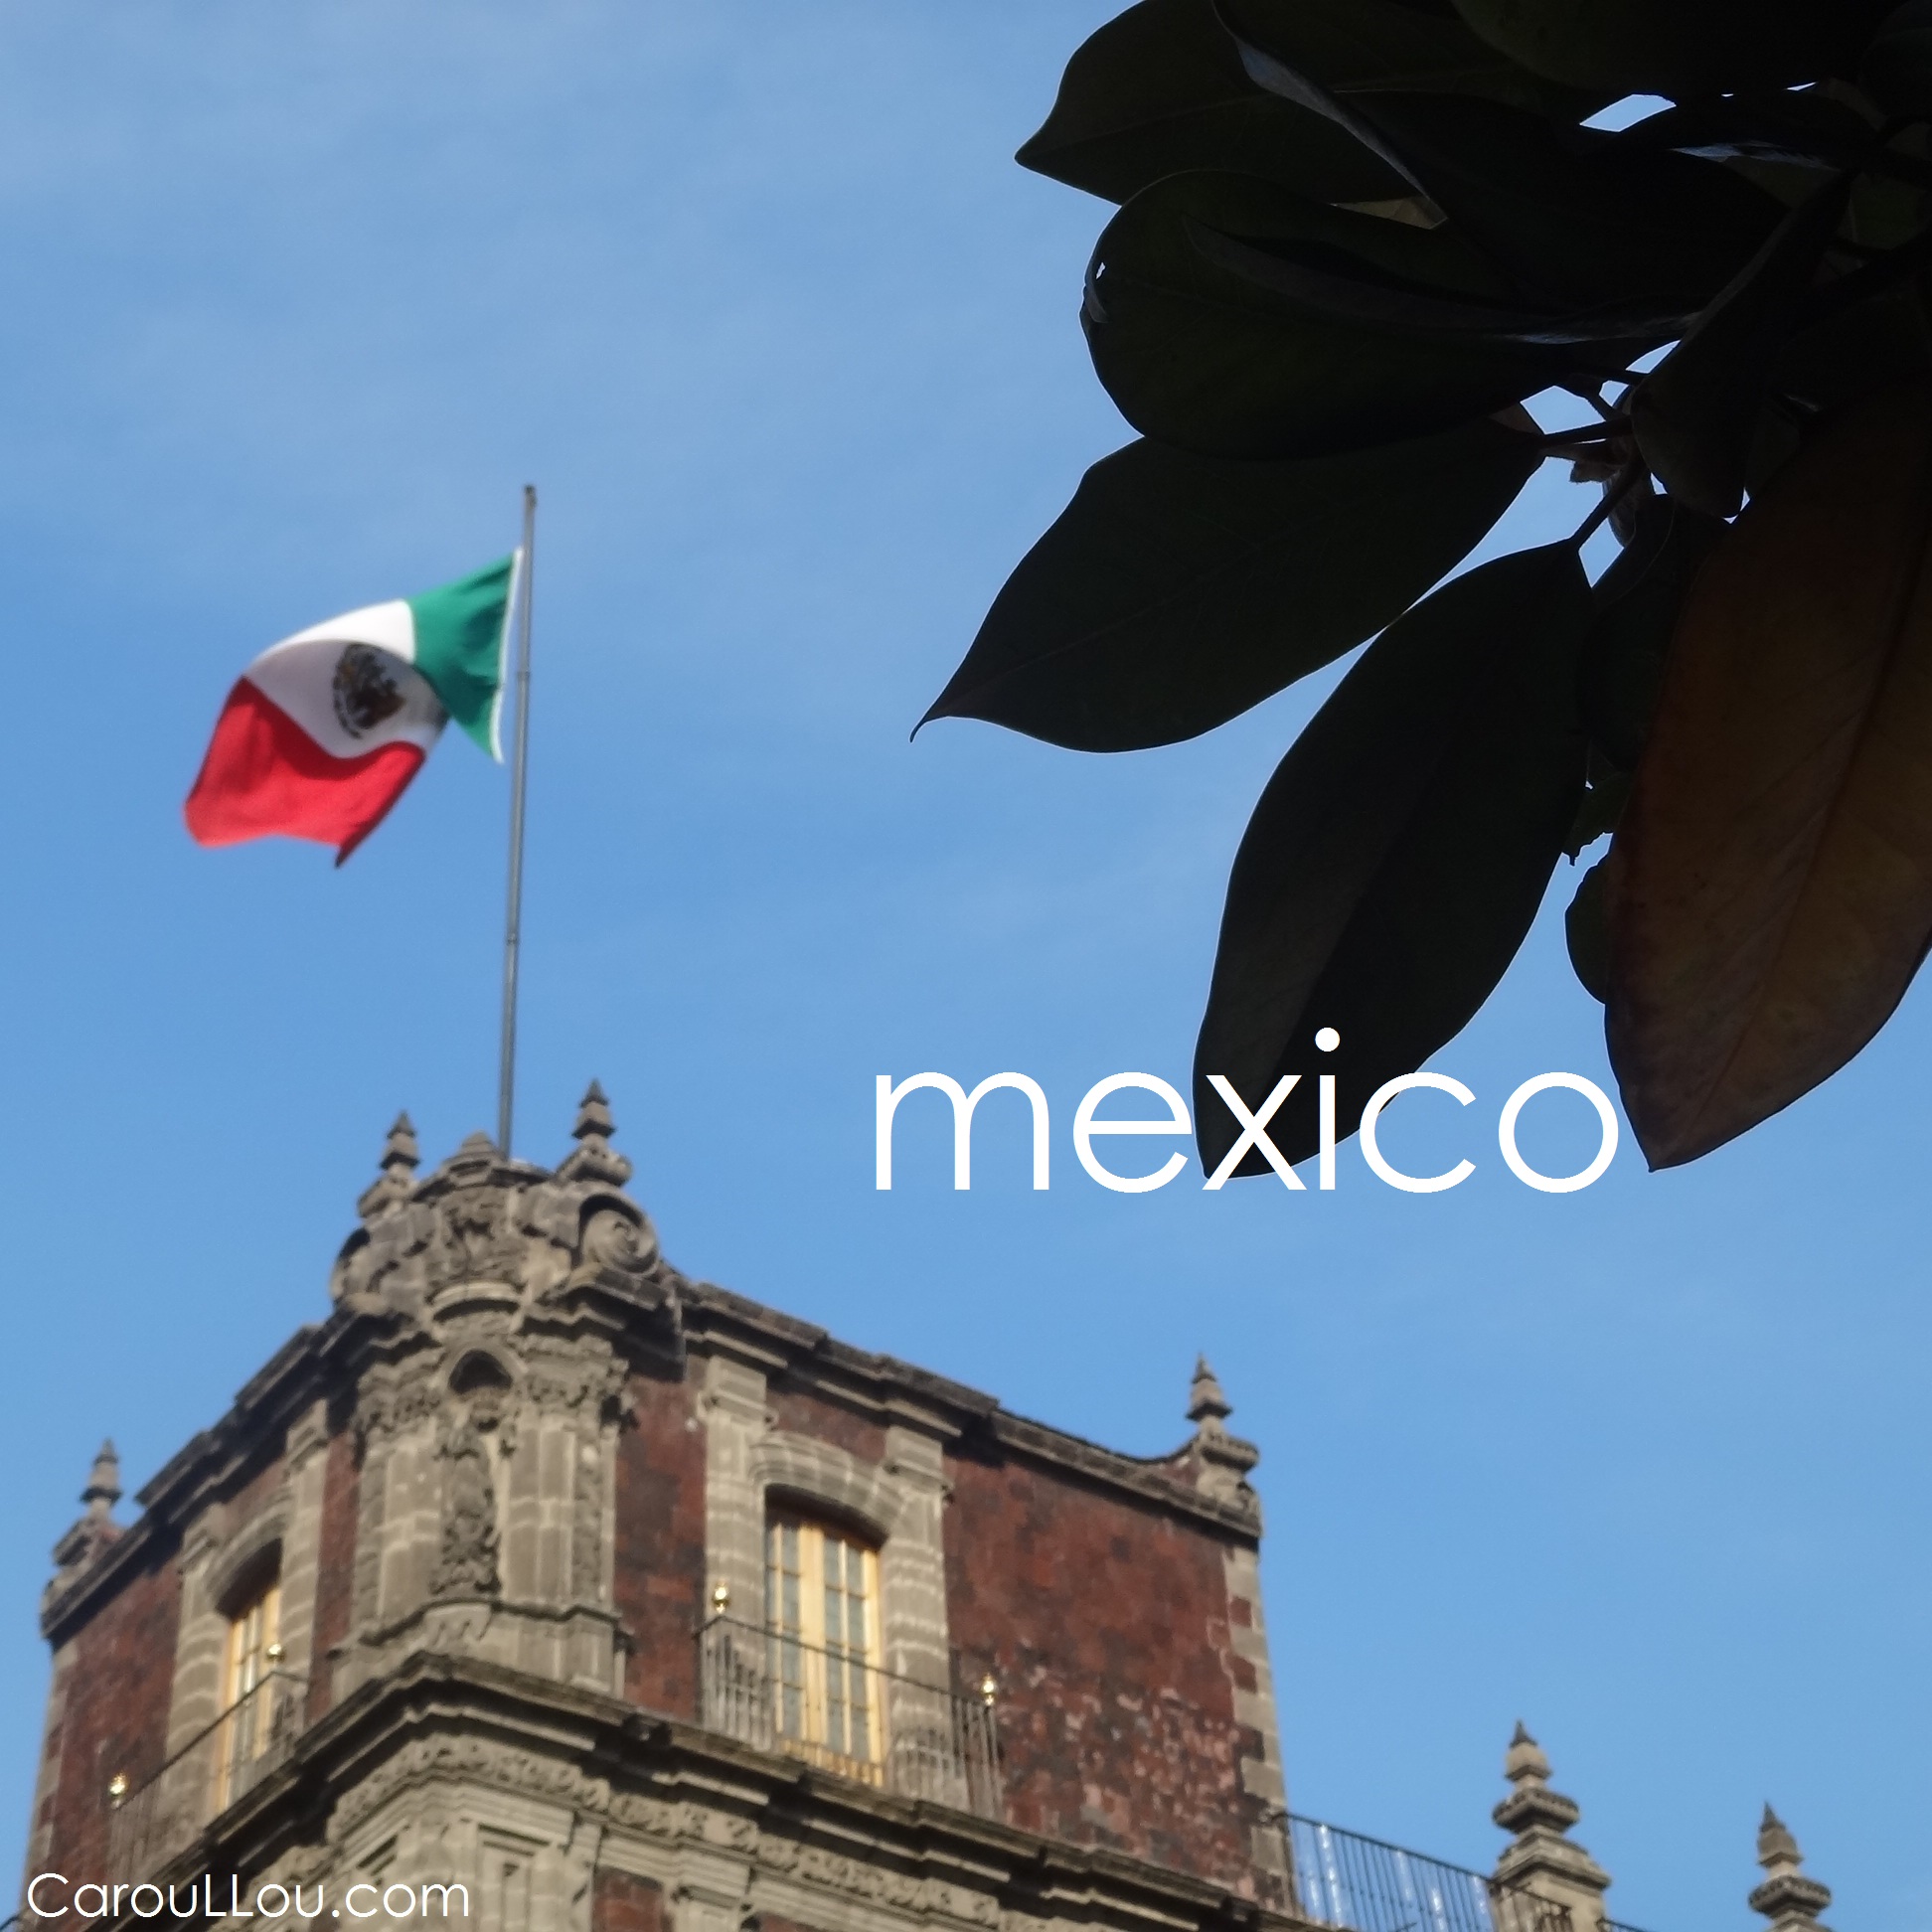 CarouLLou.com Carou LLou in Mexico city flag +-